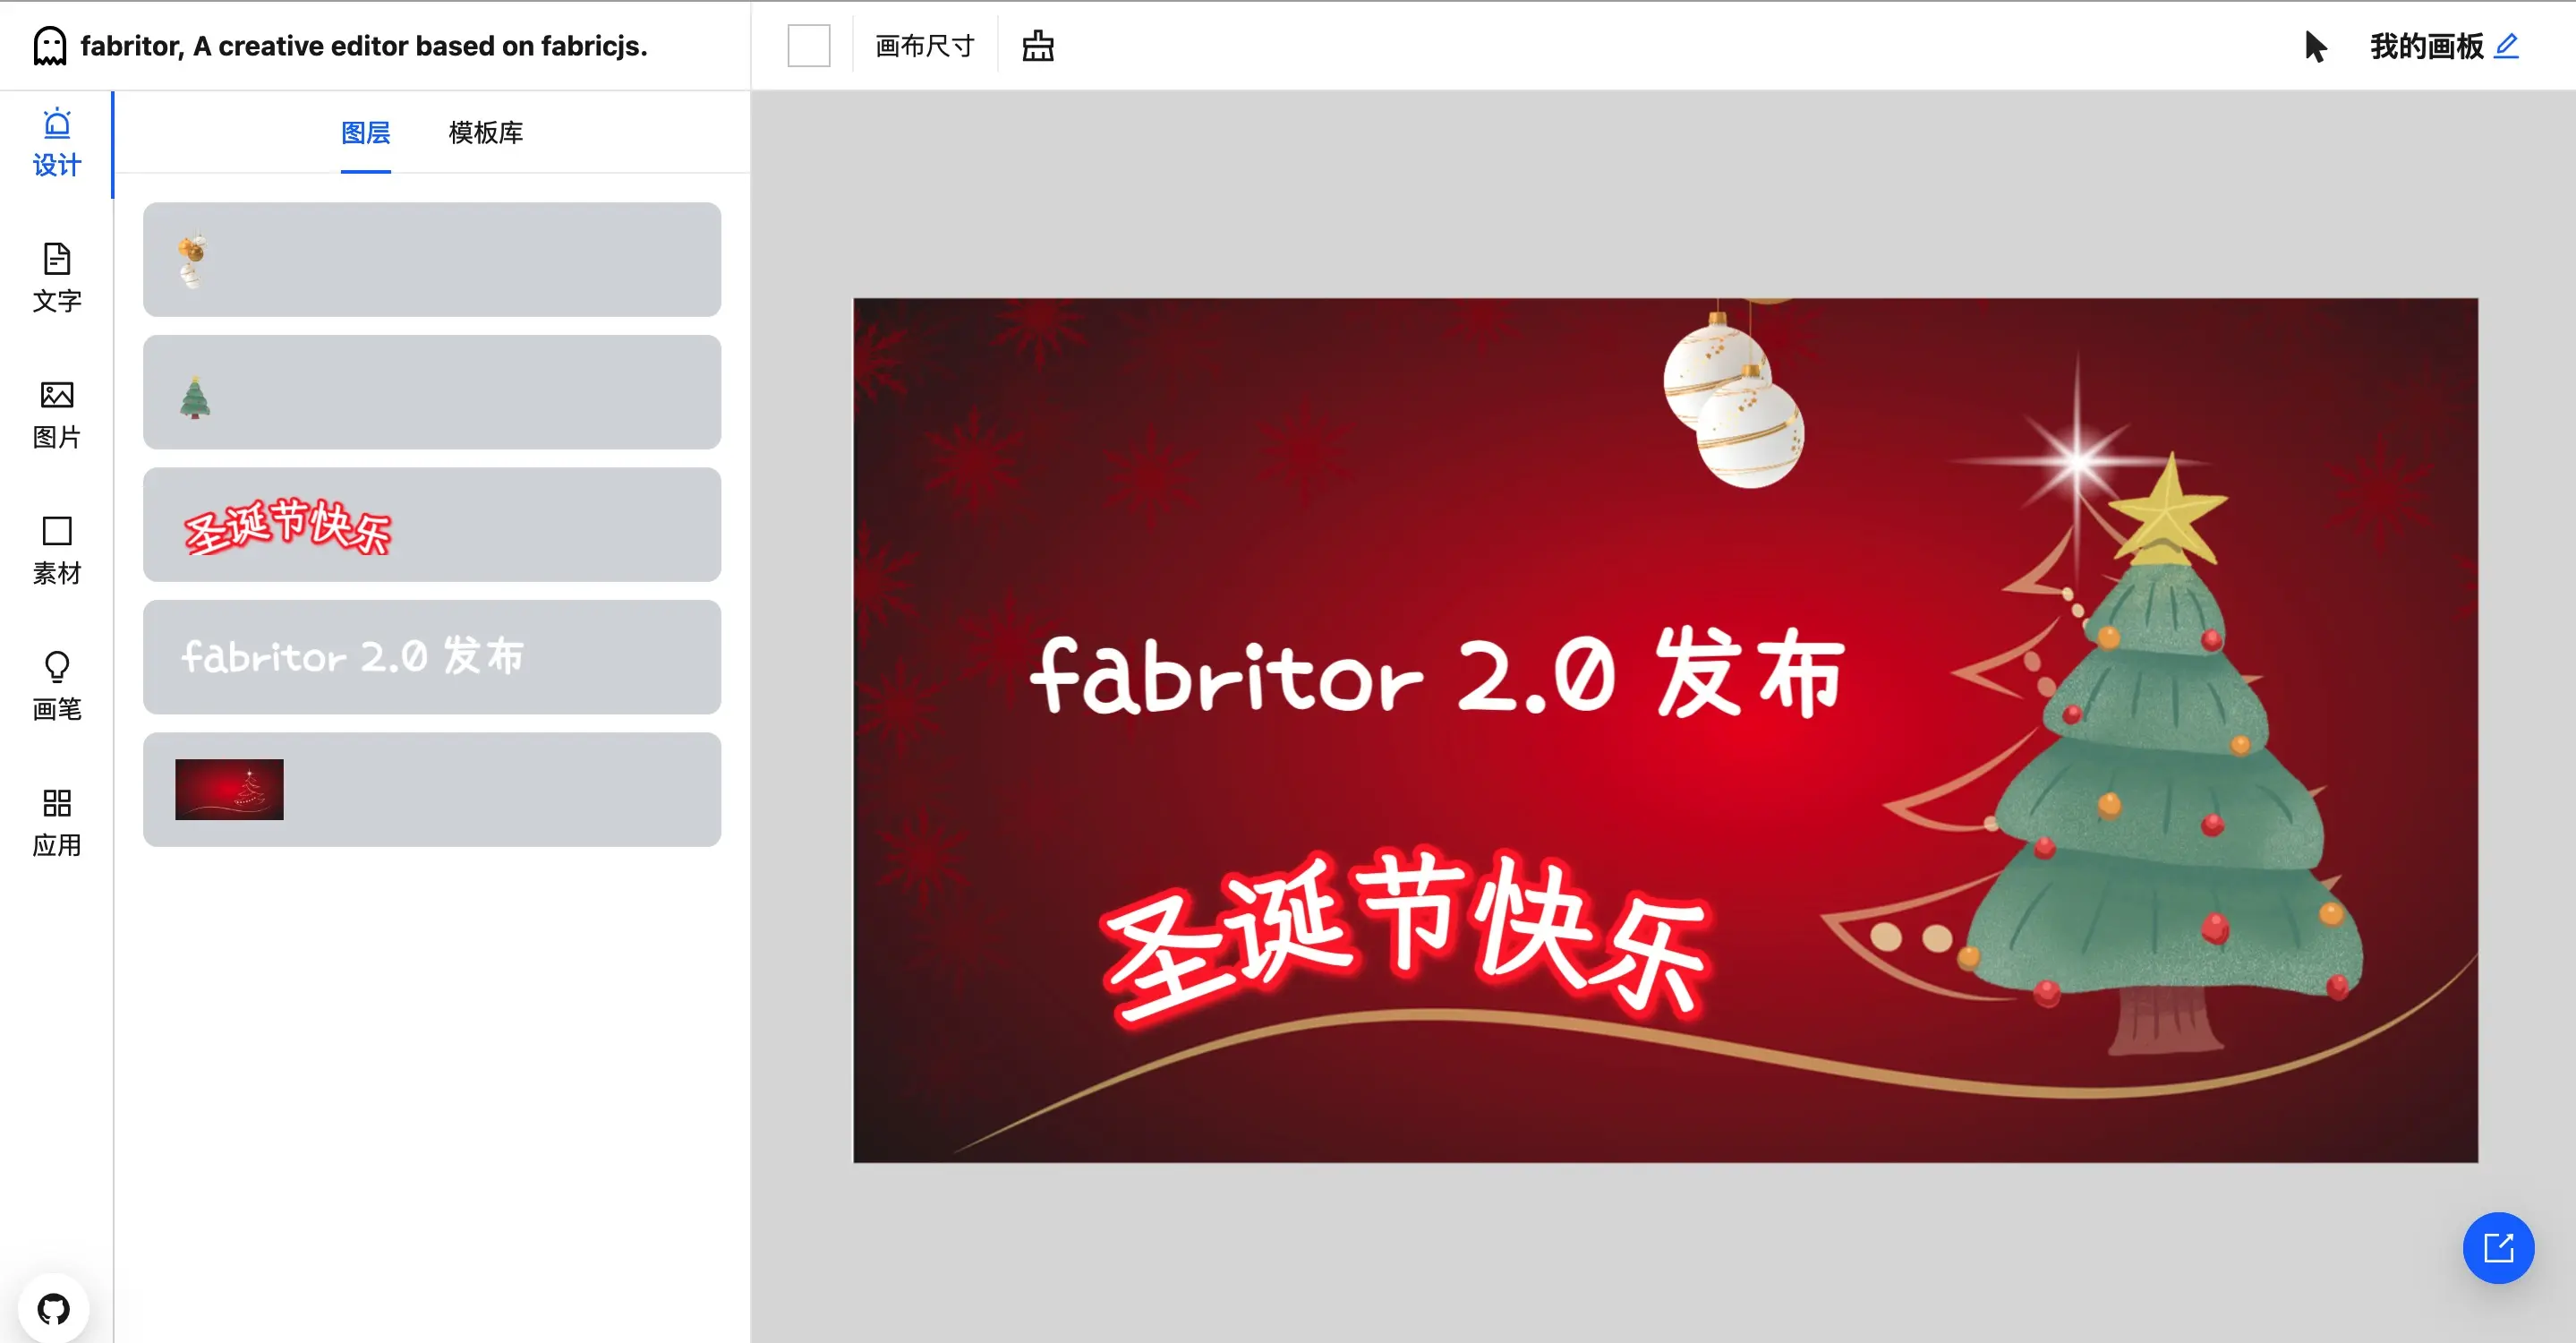 圣诞节快乐的 fabritor 2.0 发布！